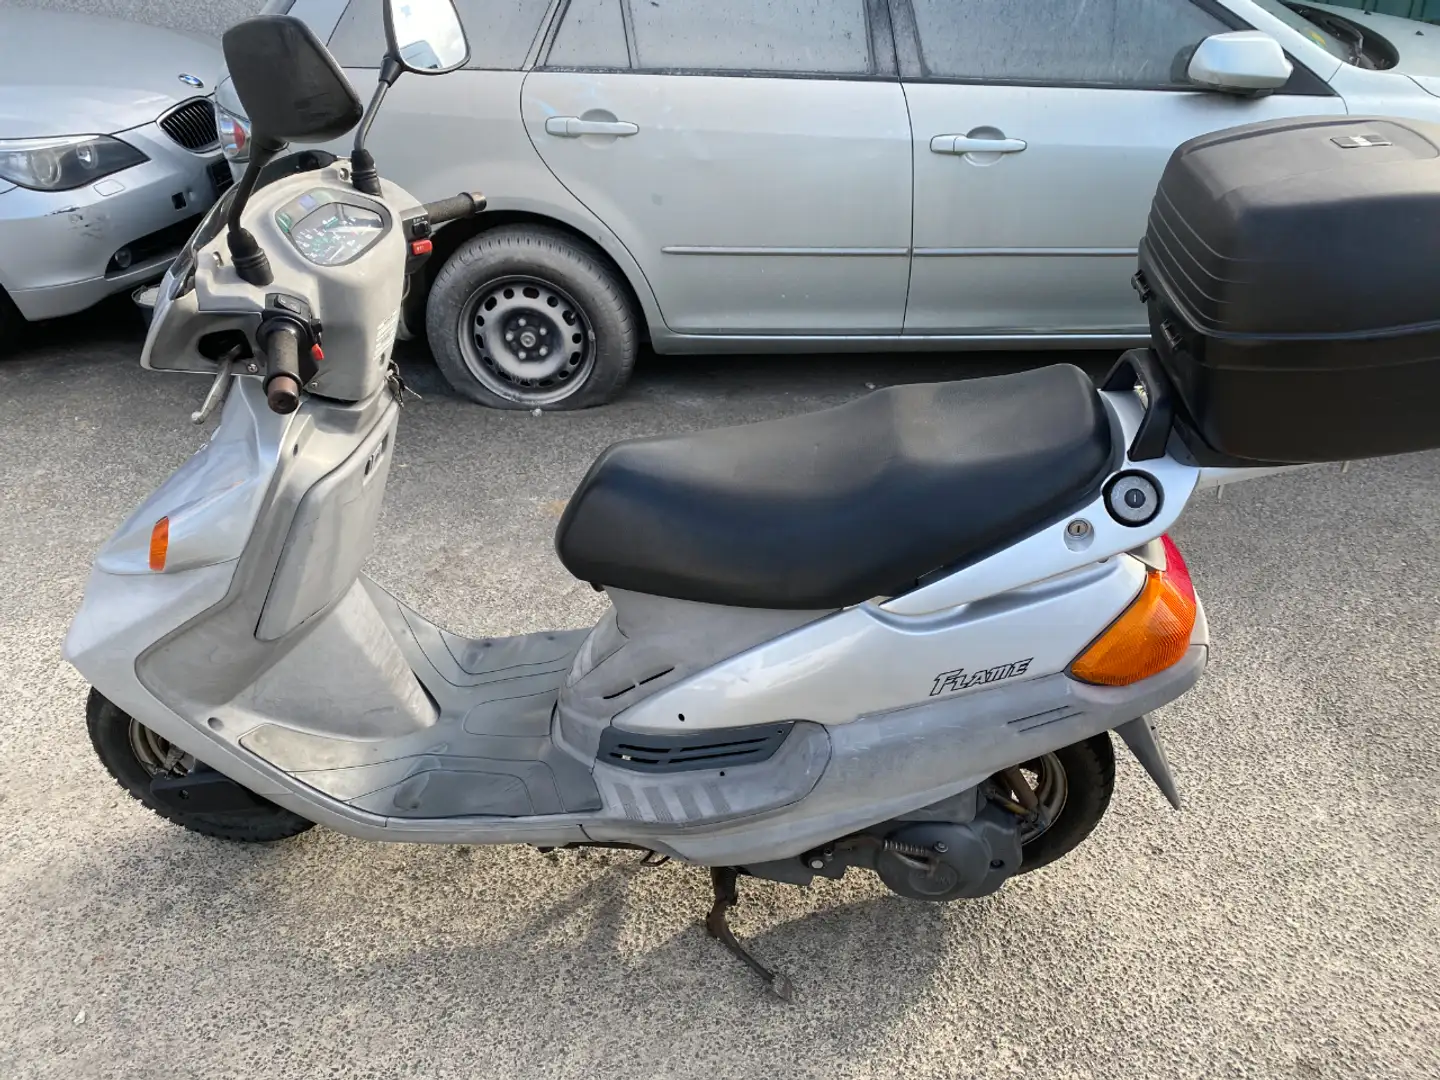 Yamaha XC 125 Roller/Scooter in Silber gebraucht in Herne für € 550,-